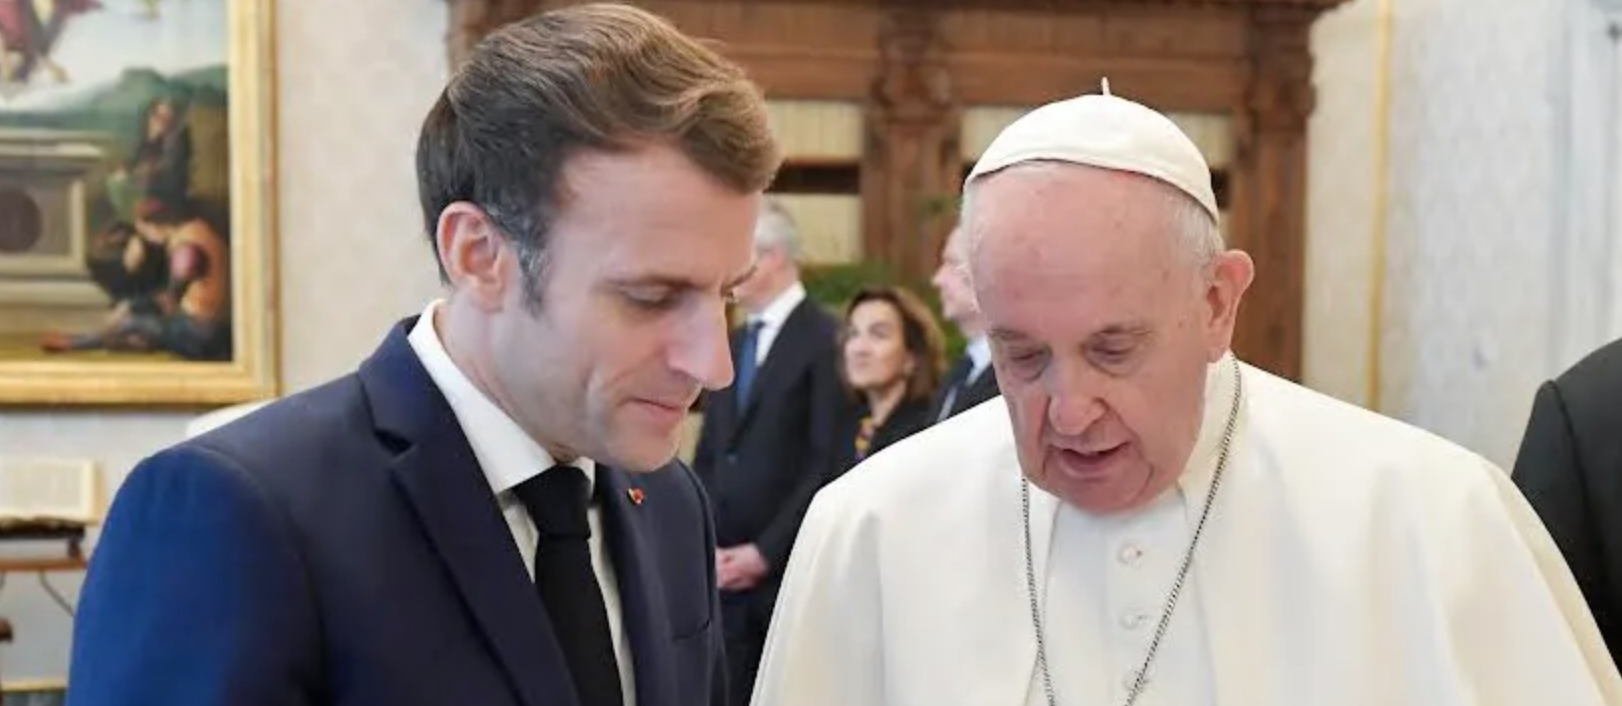 Le pape Françoise et Emmanuel Macron se tutoient | © Vatican Media